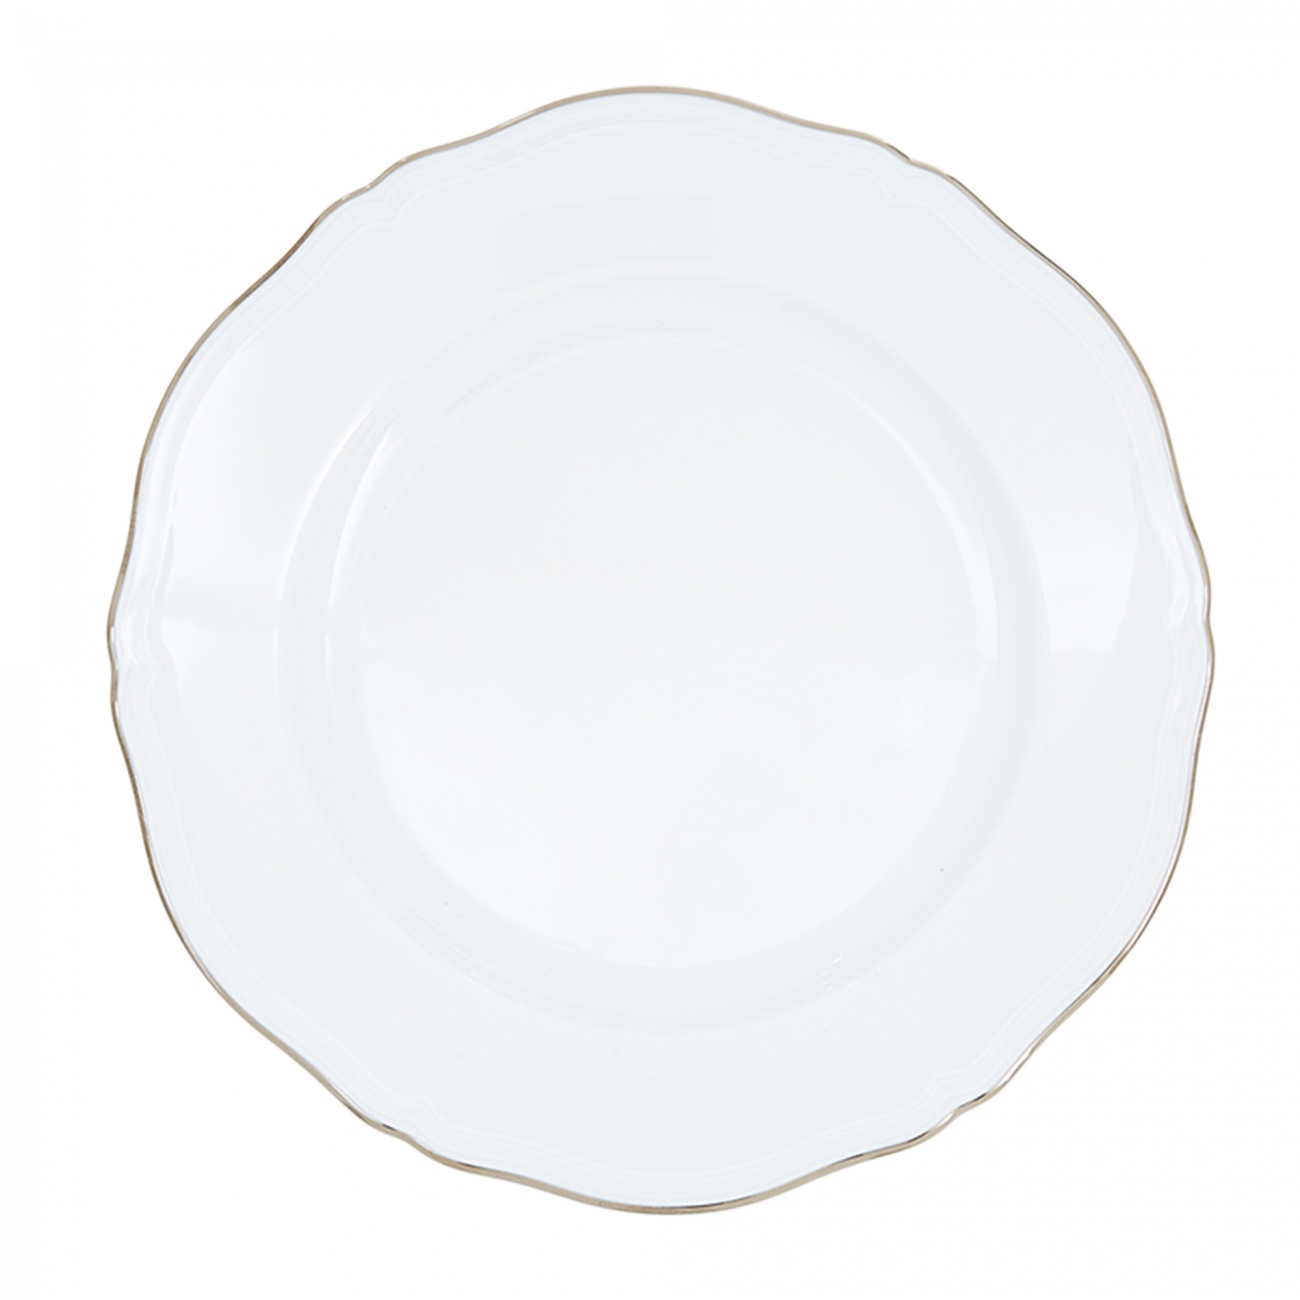 Ginori 1735 Corona Charger Plate